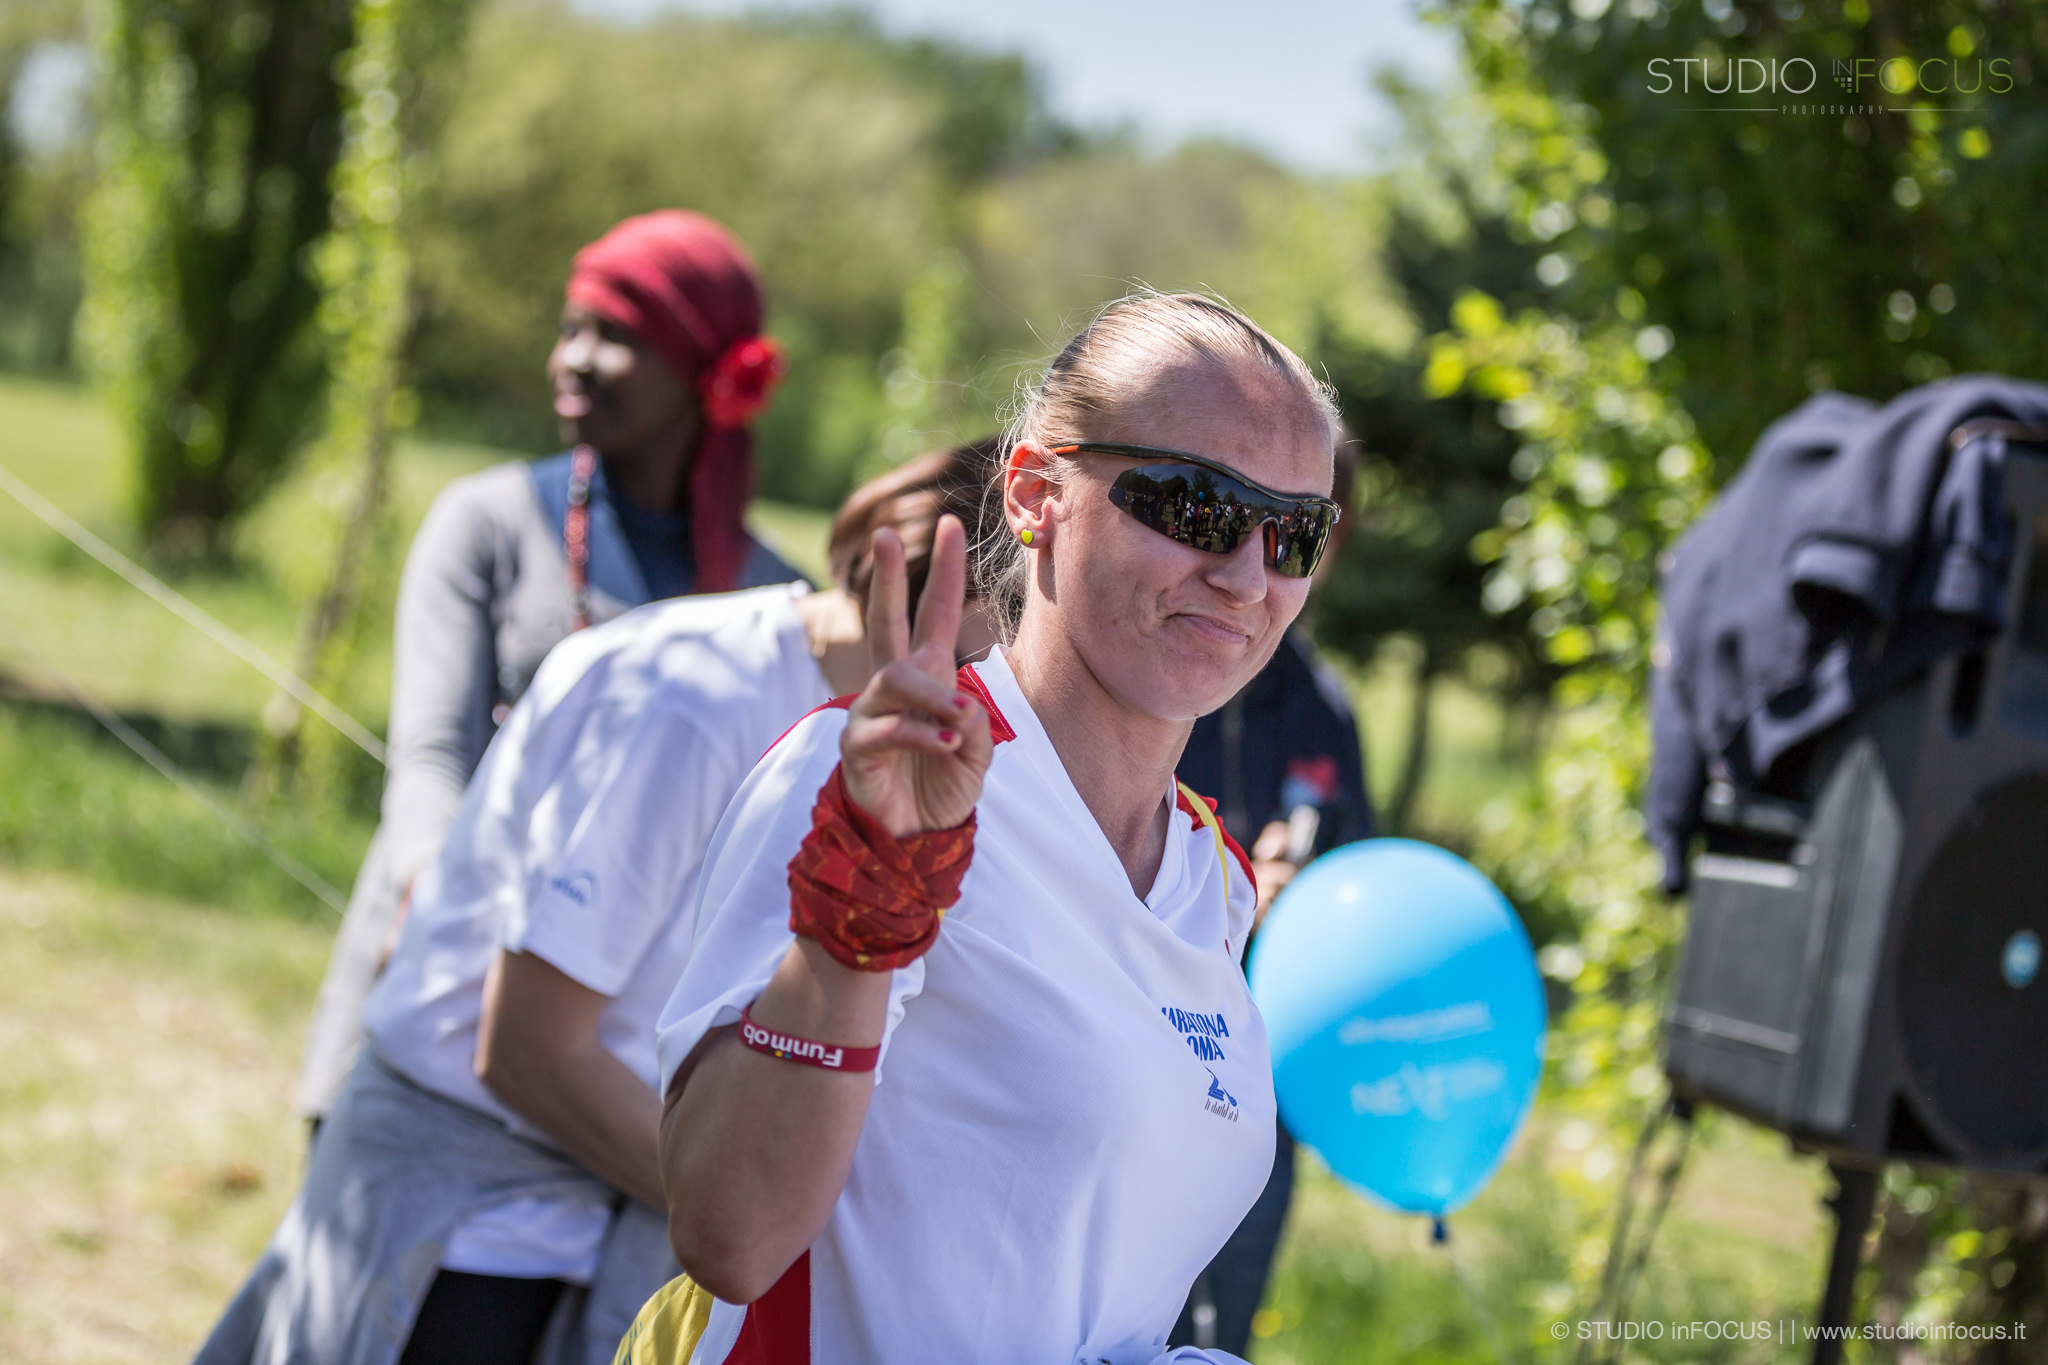 Sport4Earth: Maratona per la Solidarietà-Earth Day Italia 